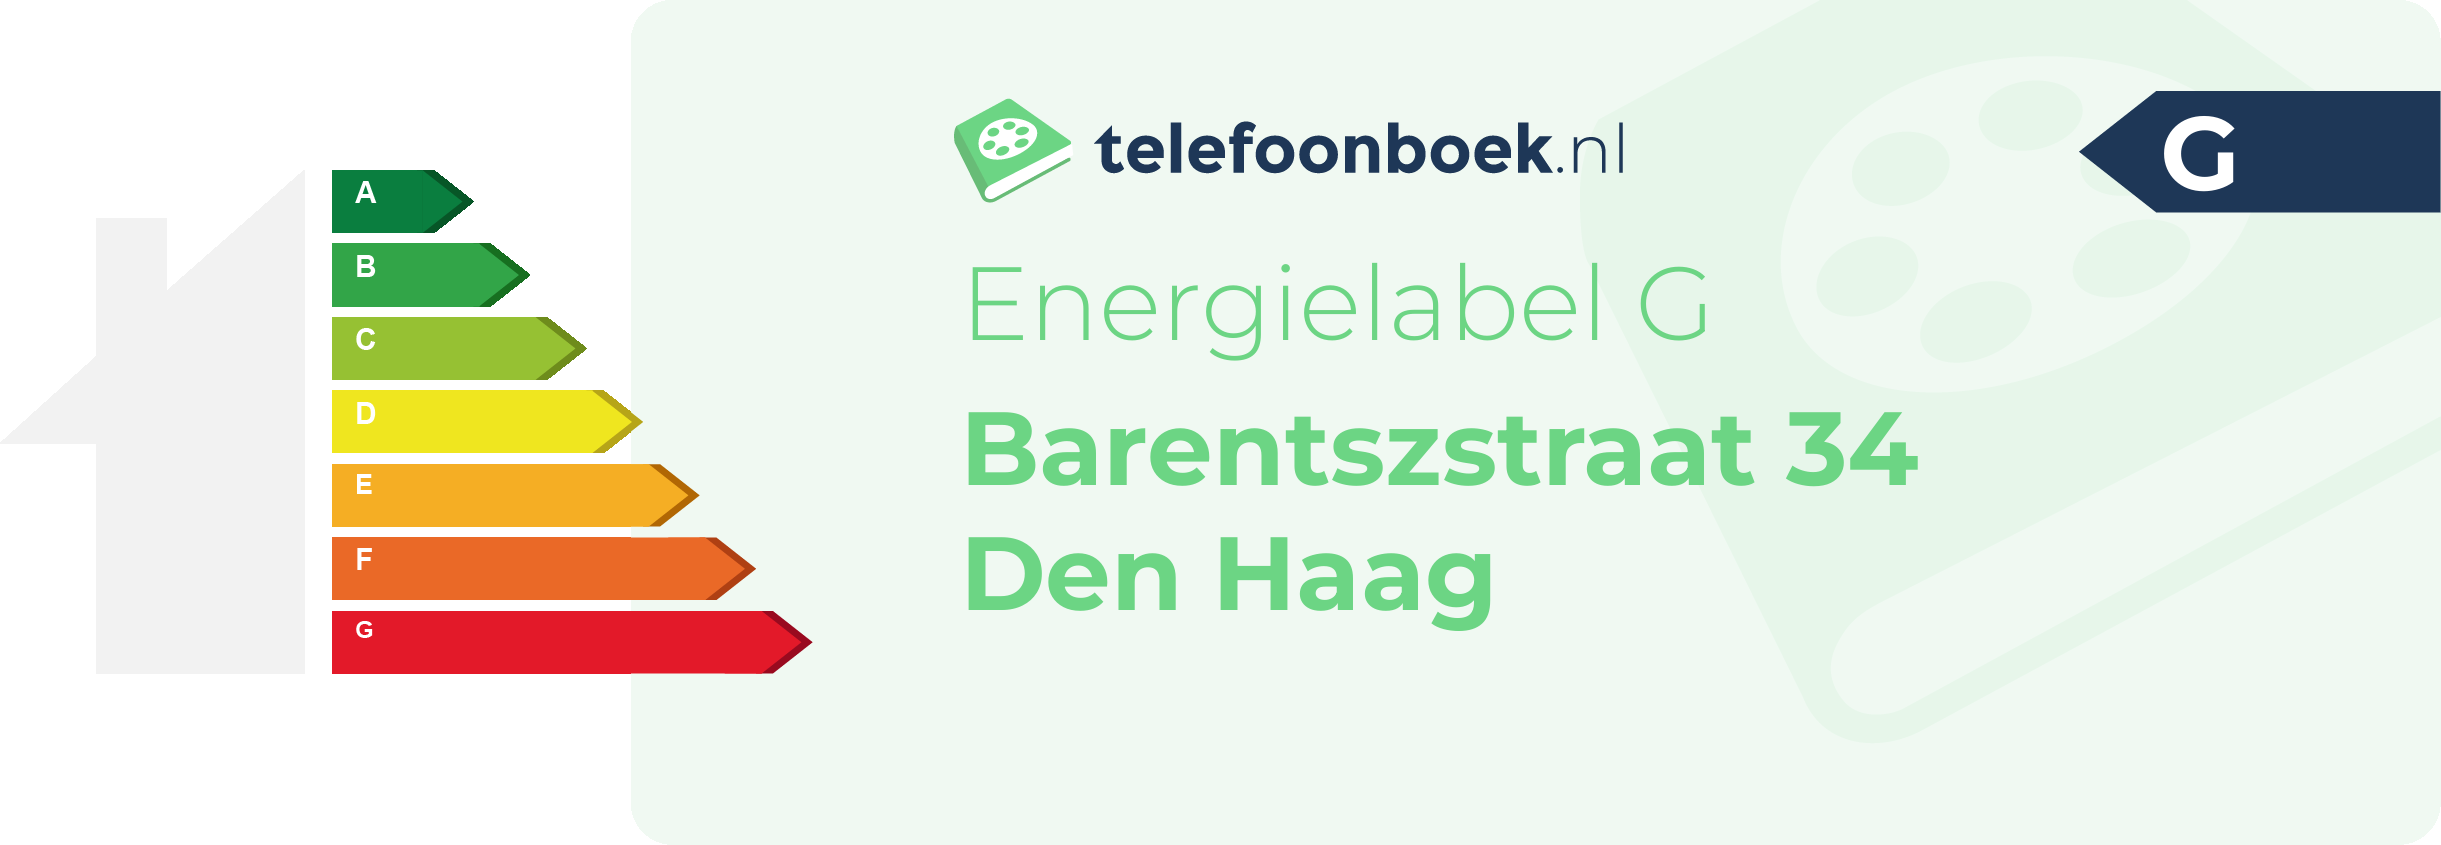 Energielabel Barentszstraat 34 Den Haag